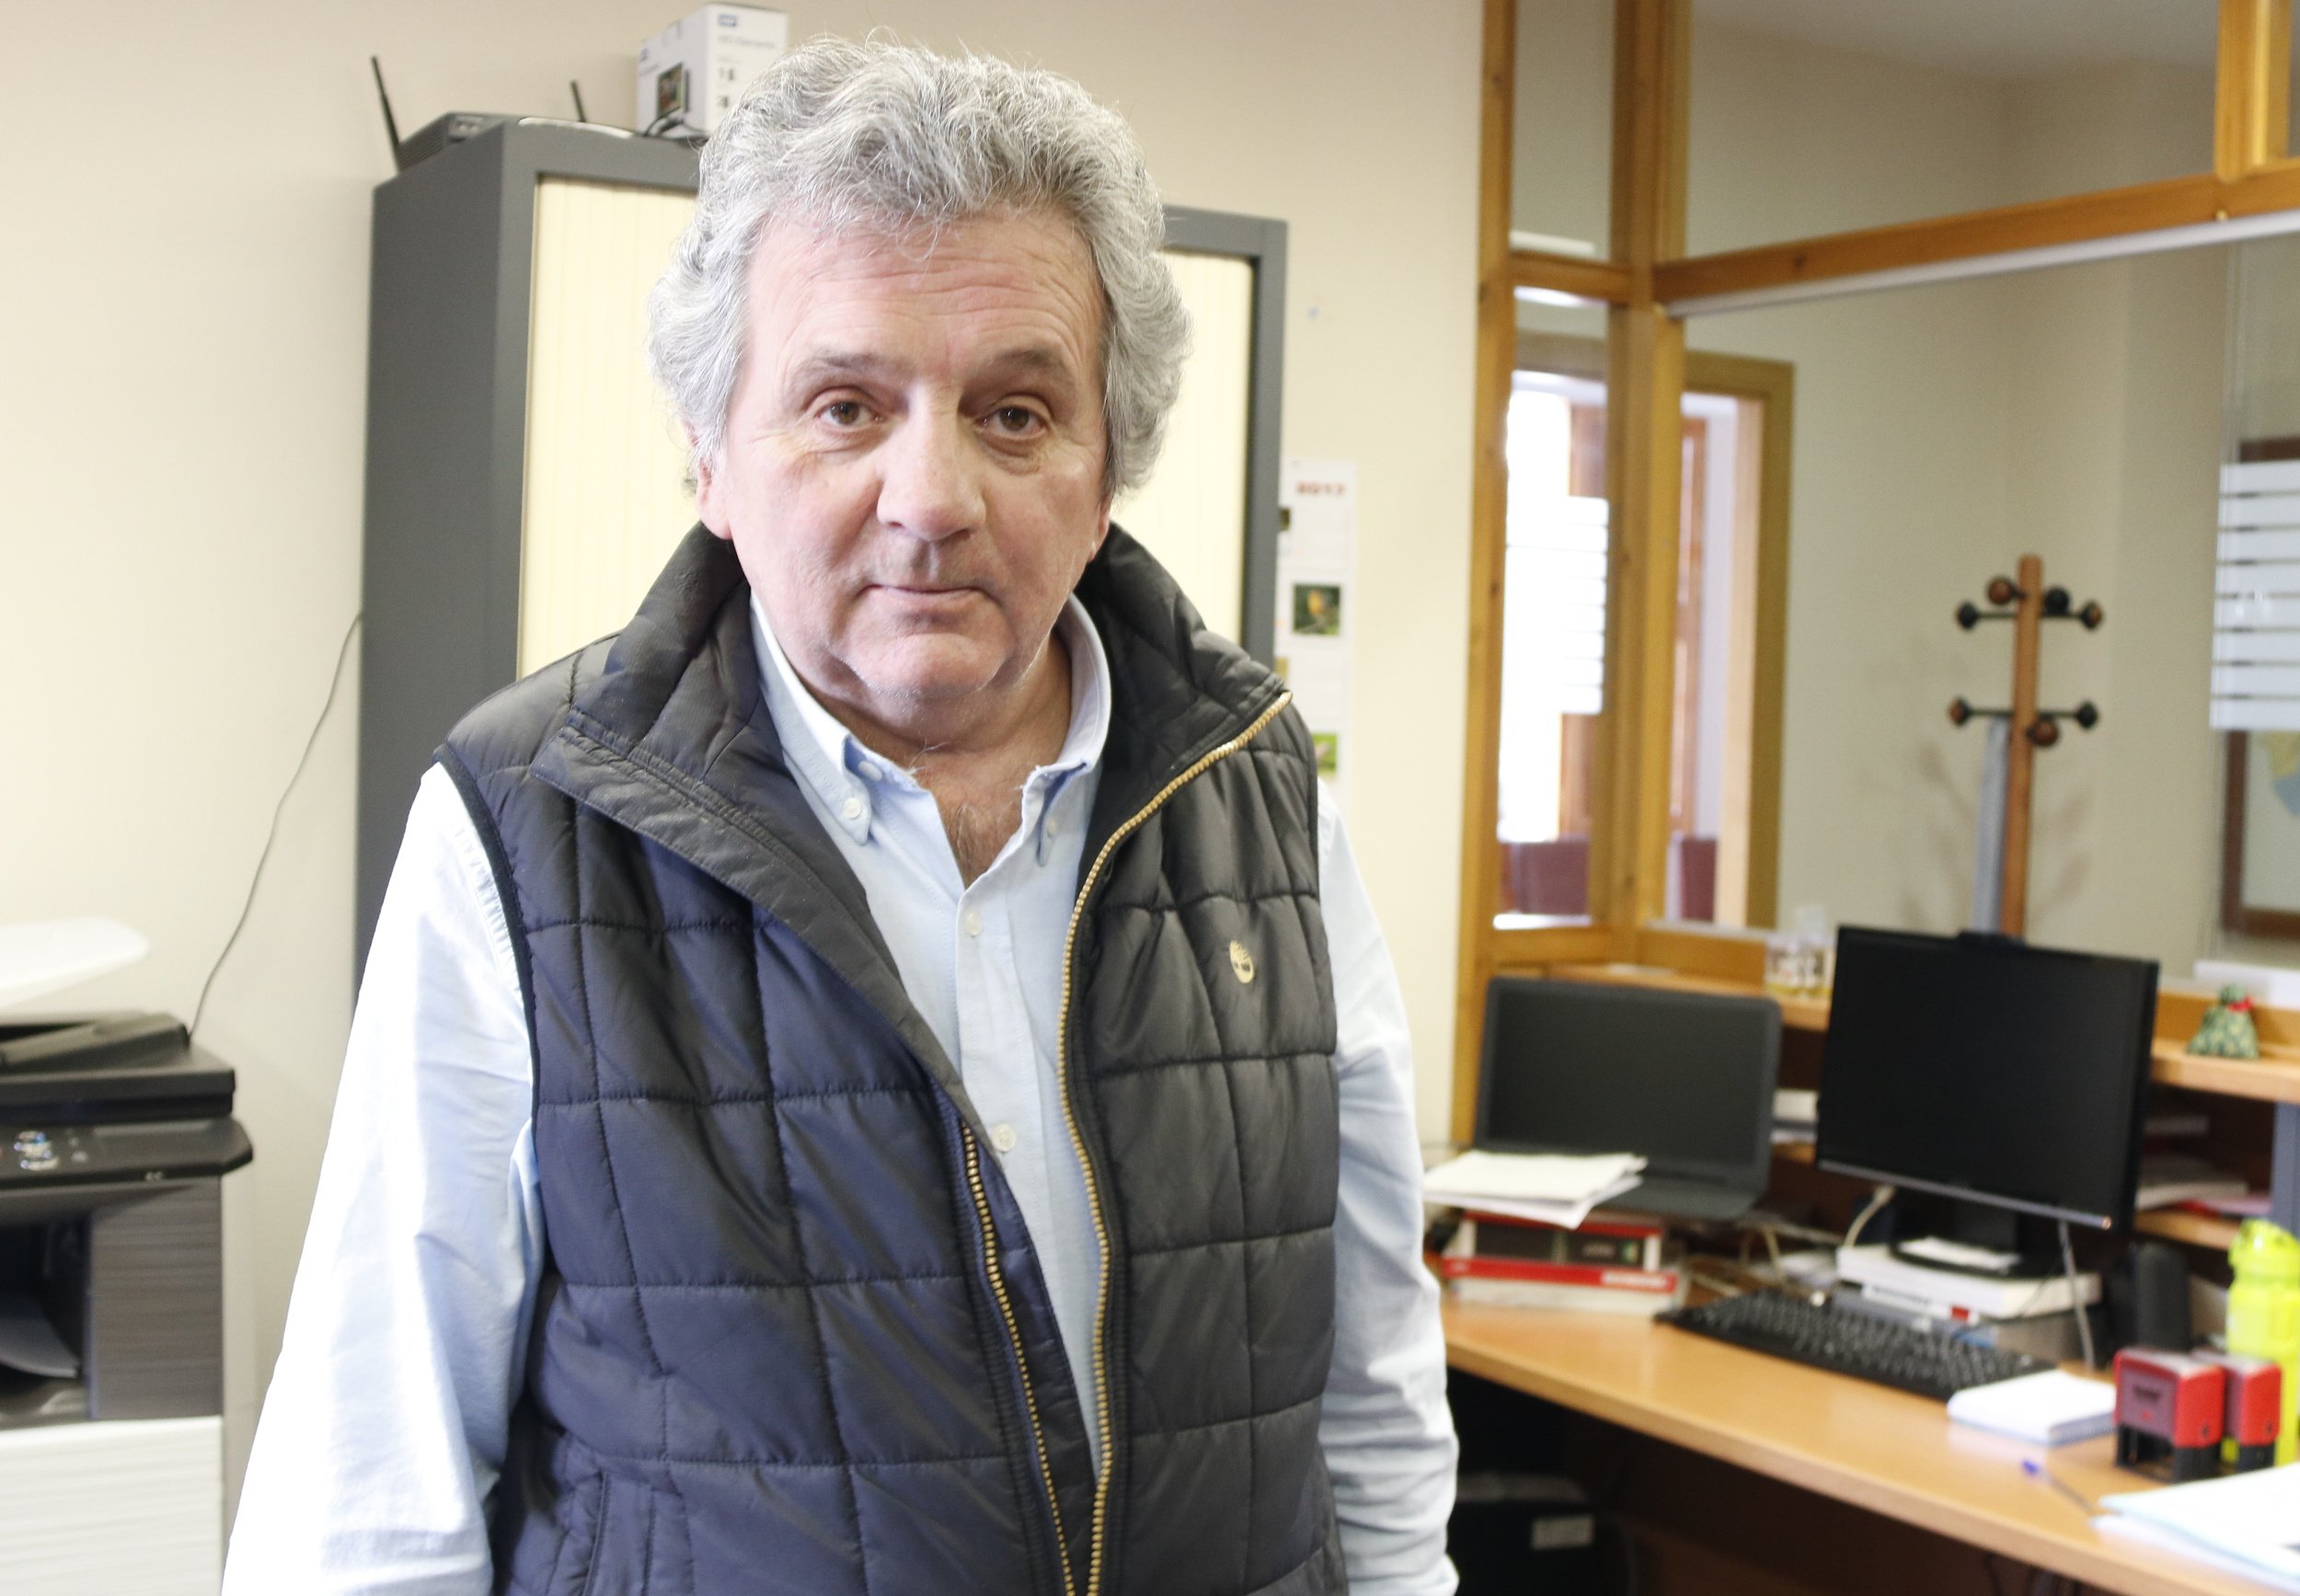 Mor als 65 anys l'alcalde de Campelles, Joan Dordas